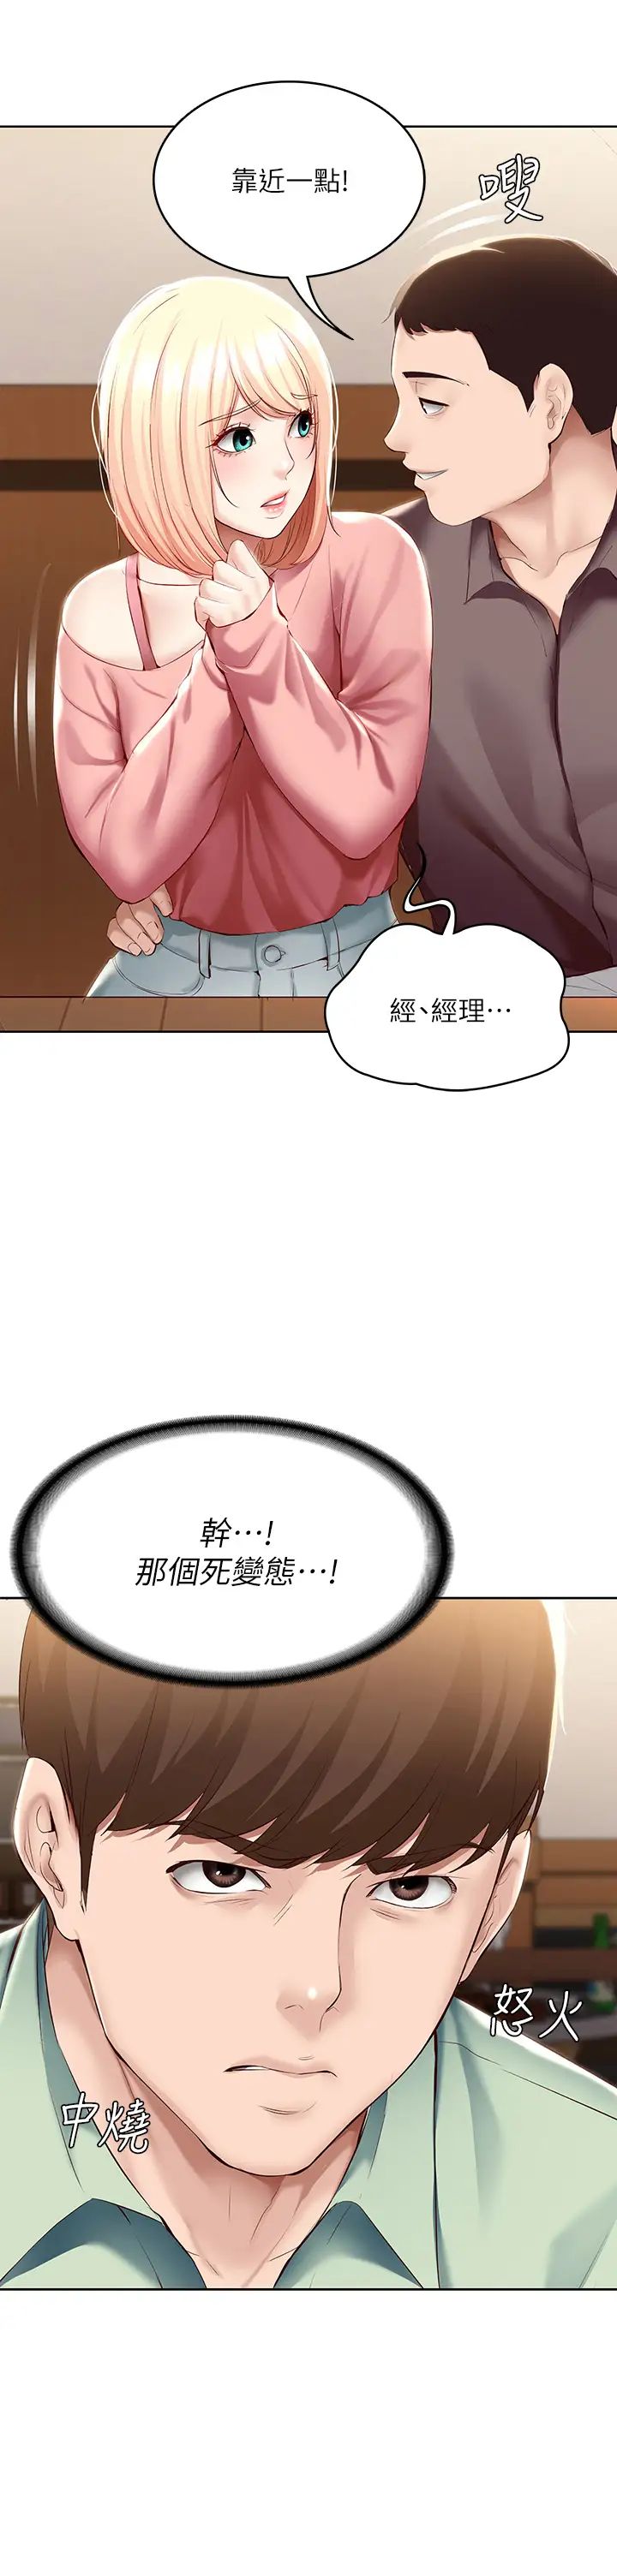 韩国污漫画 寄宿日記 第63话培琳的直球诱惑 3